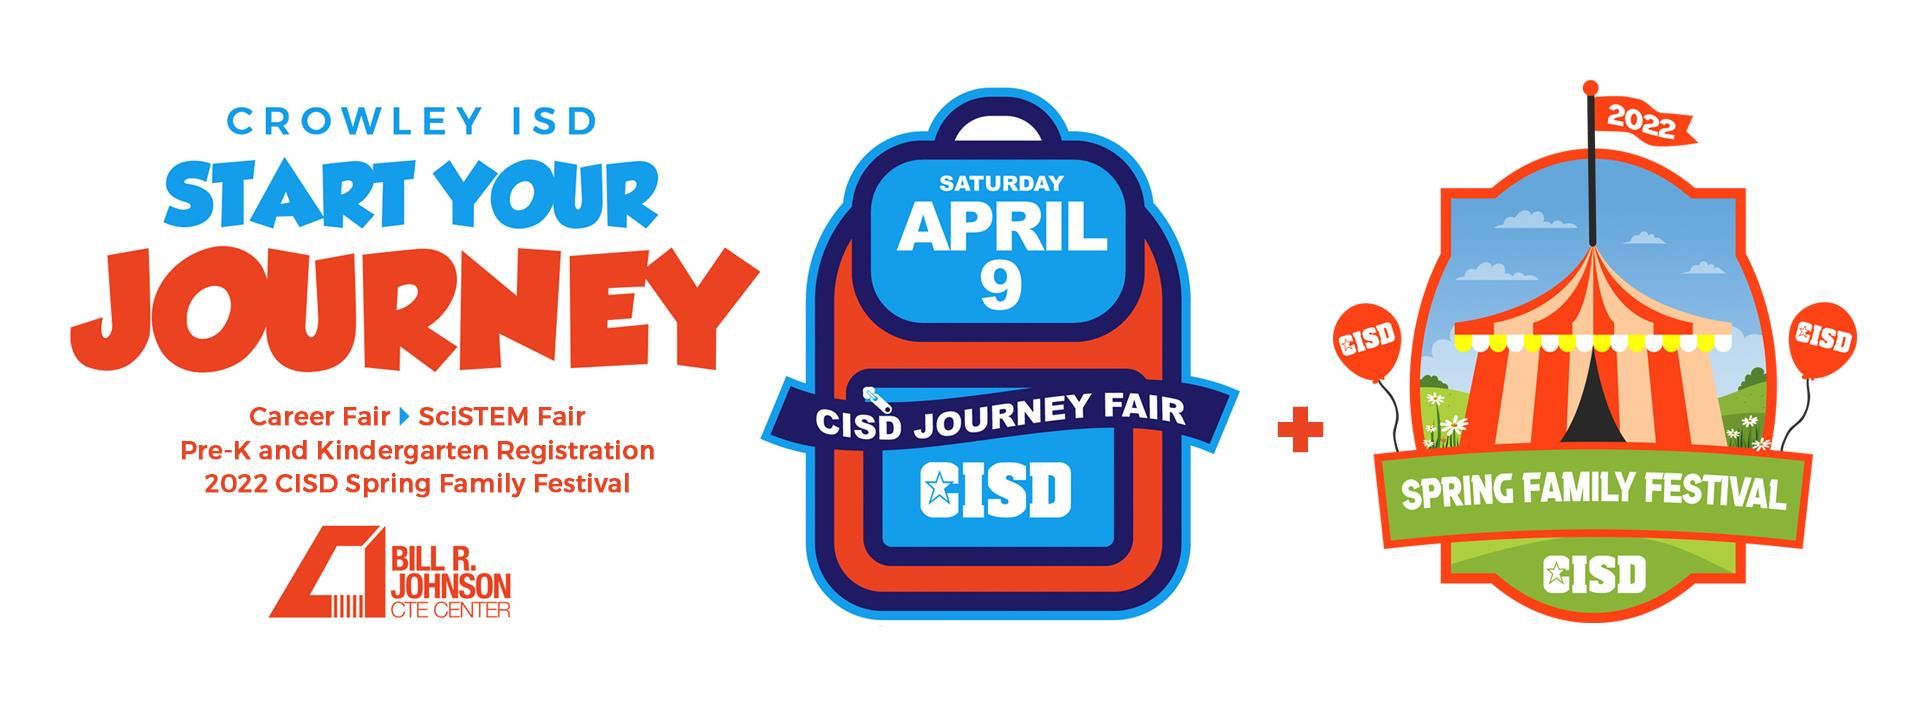 Crowley ISD Start Your Journey Career Fair, SciSTEM Fair, Pre-K and Kindergarten Registration, Spring Family Festival